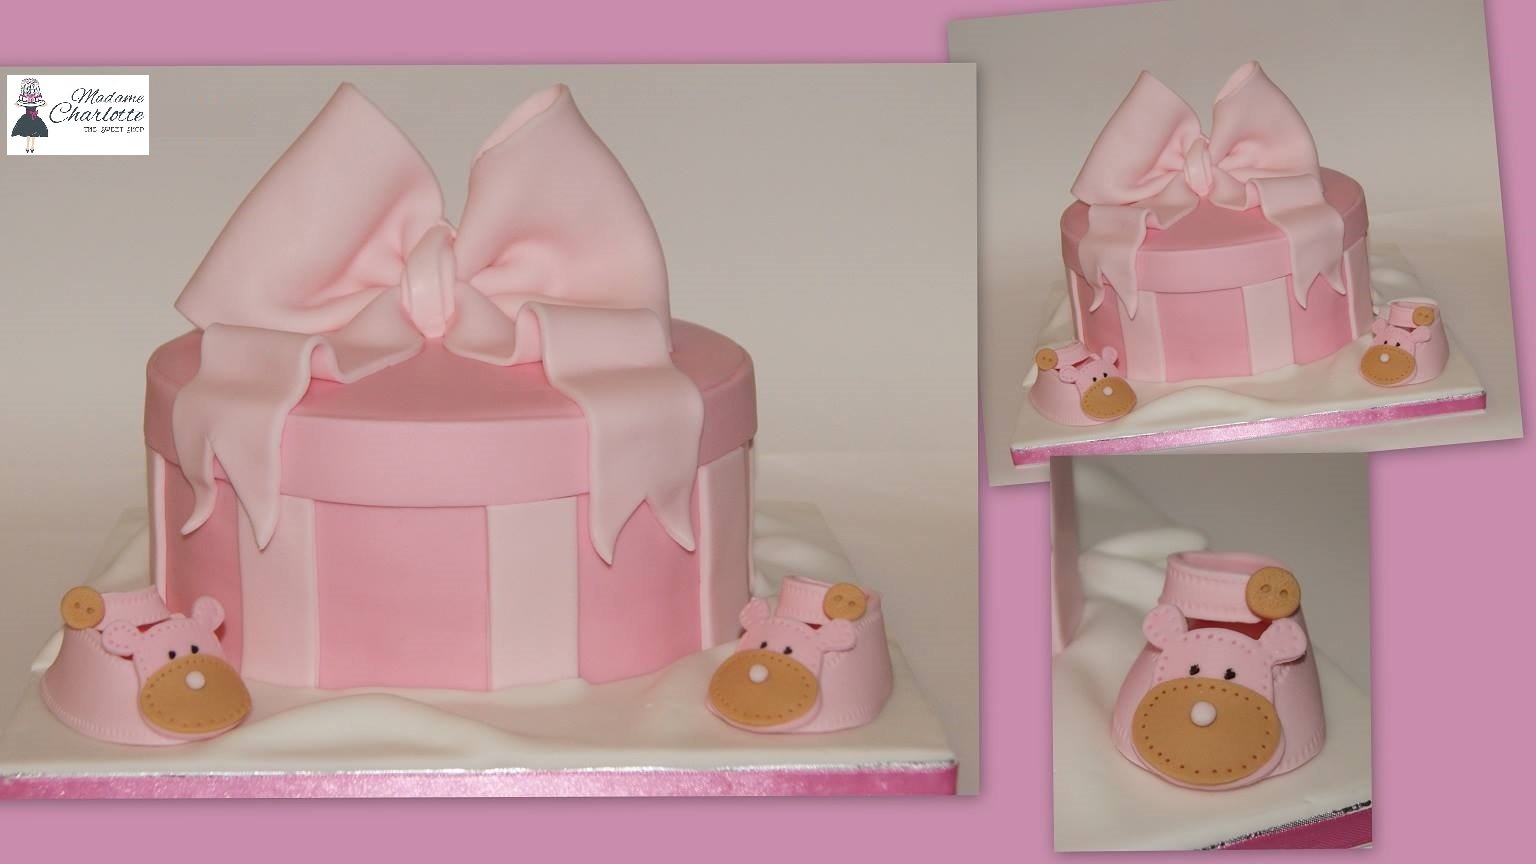 τούρτα από ζαχαρόπαστα baby shoes box, Ζαχαροπλαστείο καλαμάτα madamecharlotte.gr, τούρτες γεννεθλίων γάμου βάπτησης παιδικές θεματικές birthday theme party cake 2d 3d confectionery patisserie kalamata